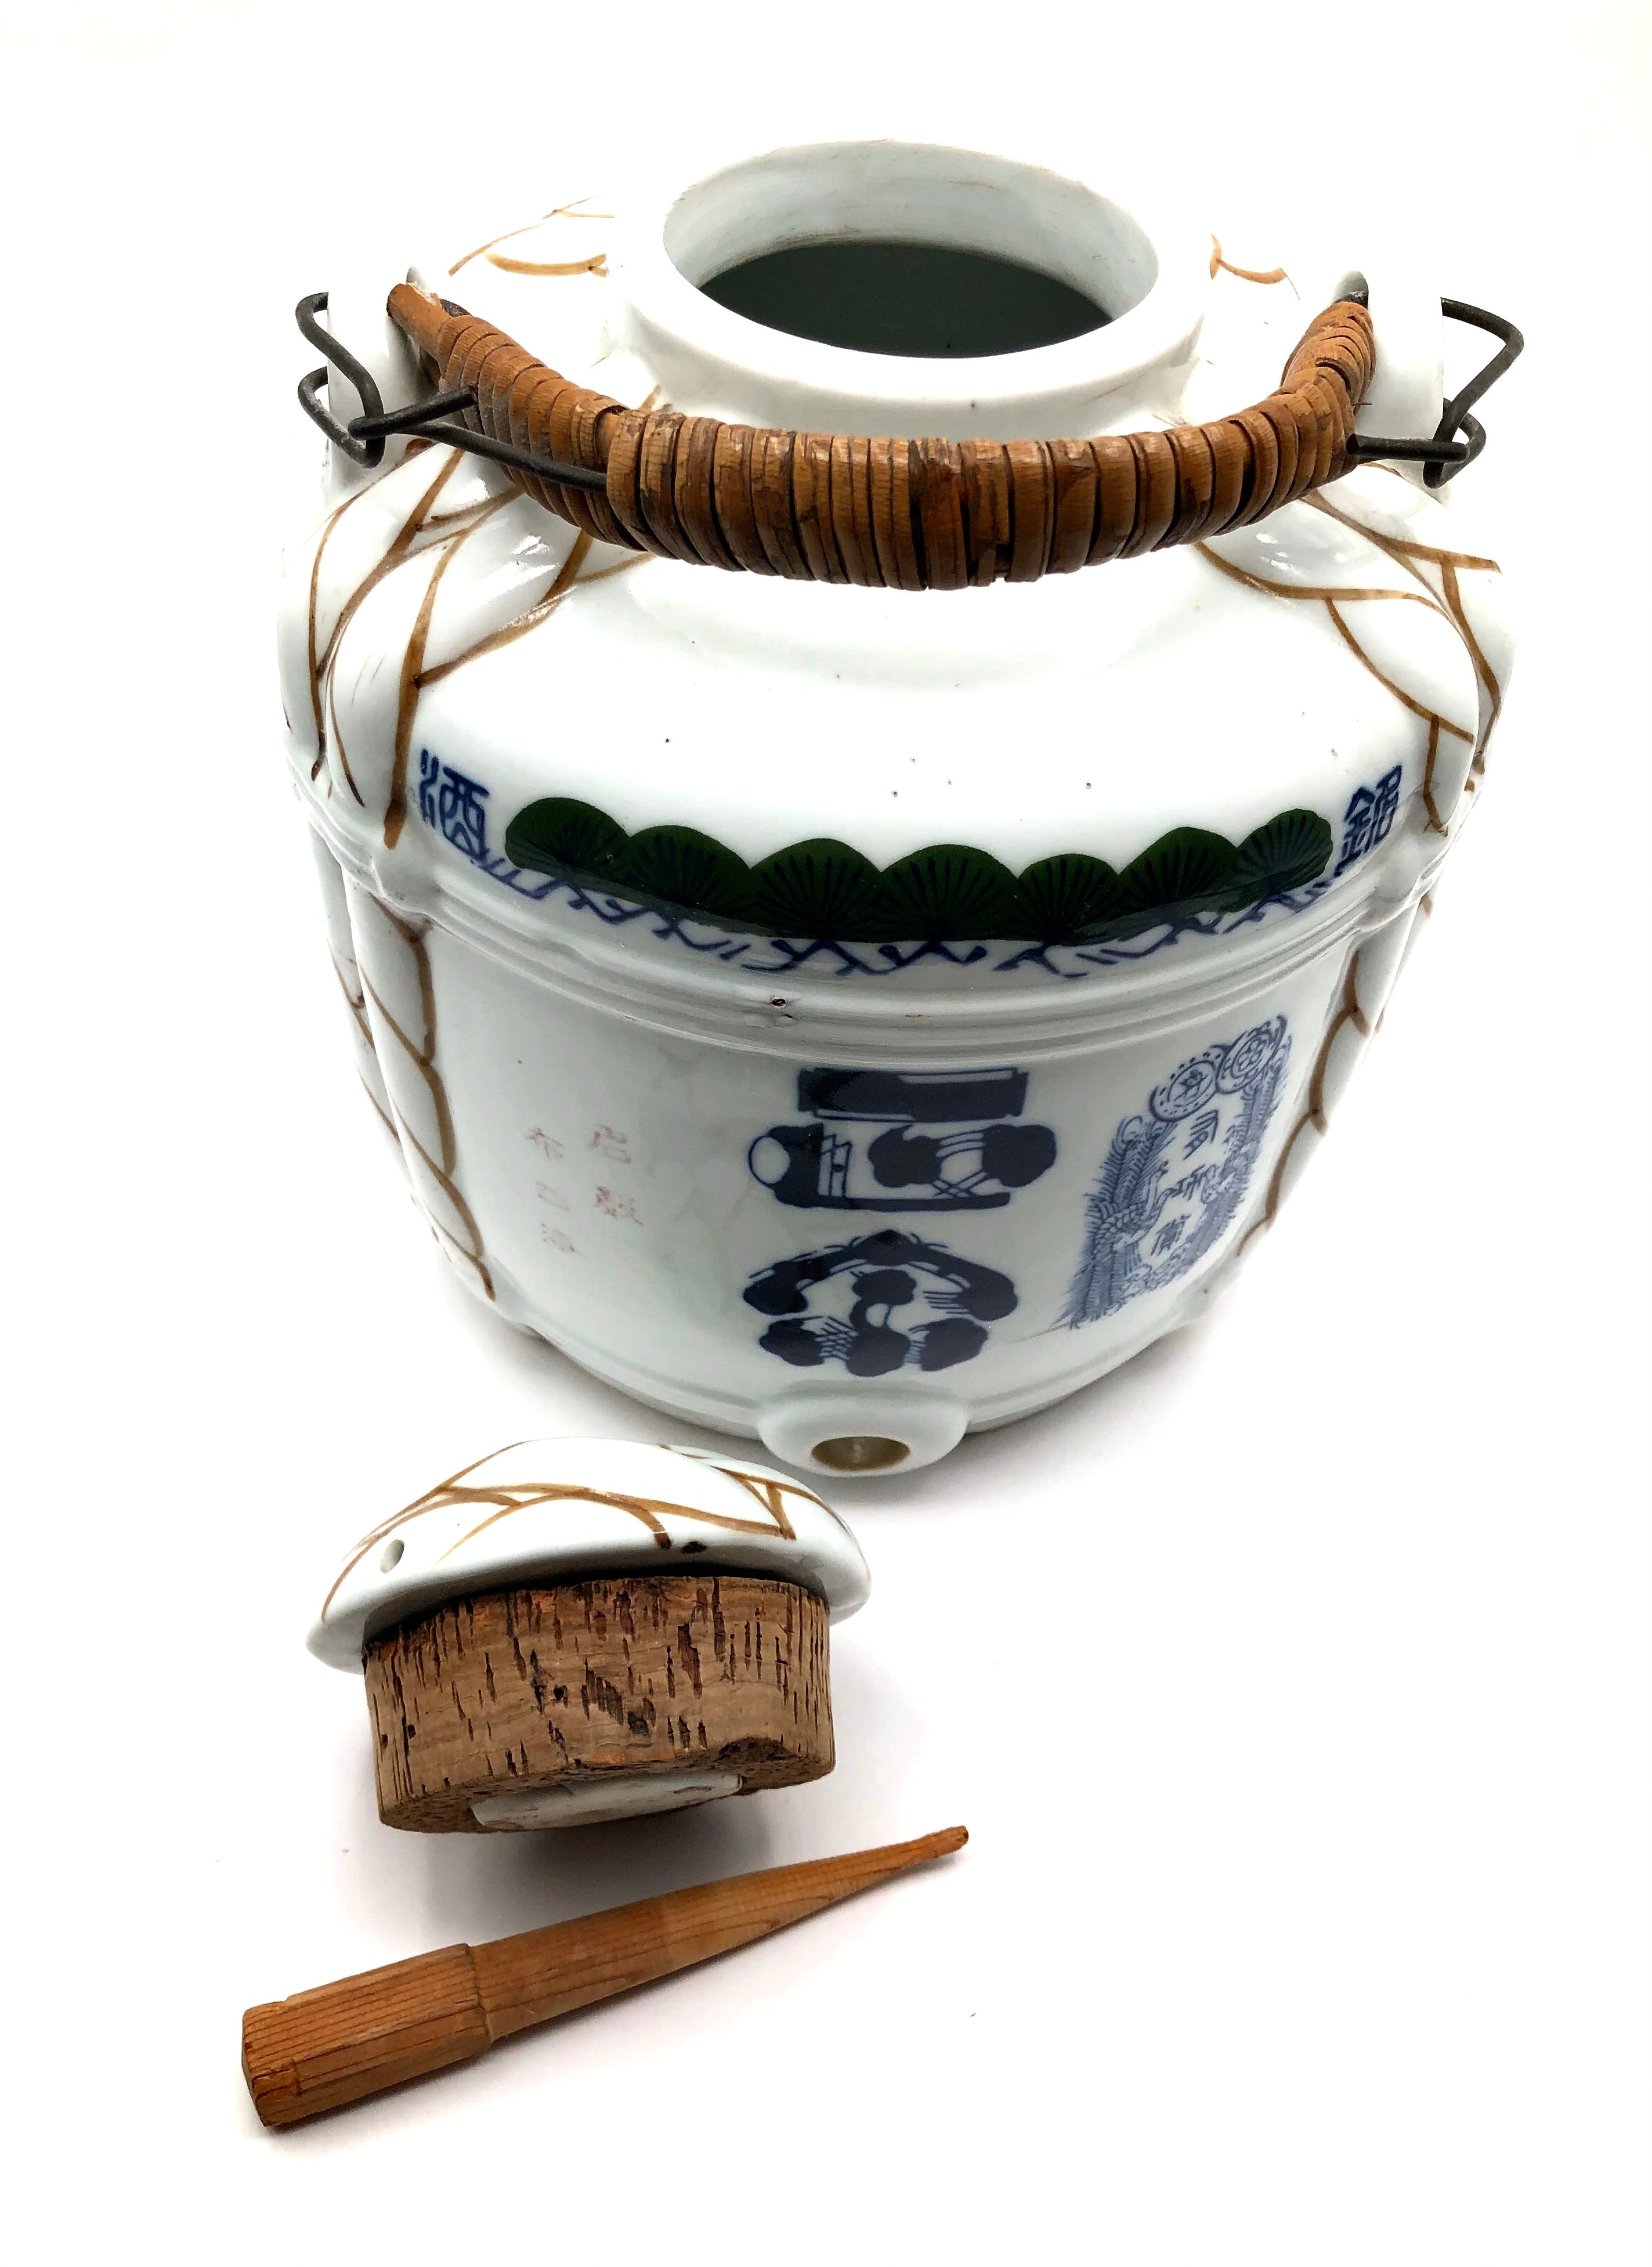 Antique Japanese Blue and White Porcelain Sake Cask / Taru Porcelain Barrel Dispenser